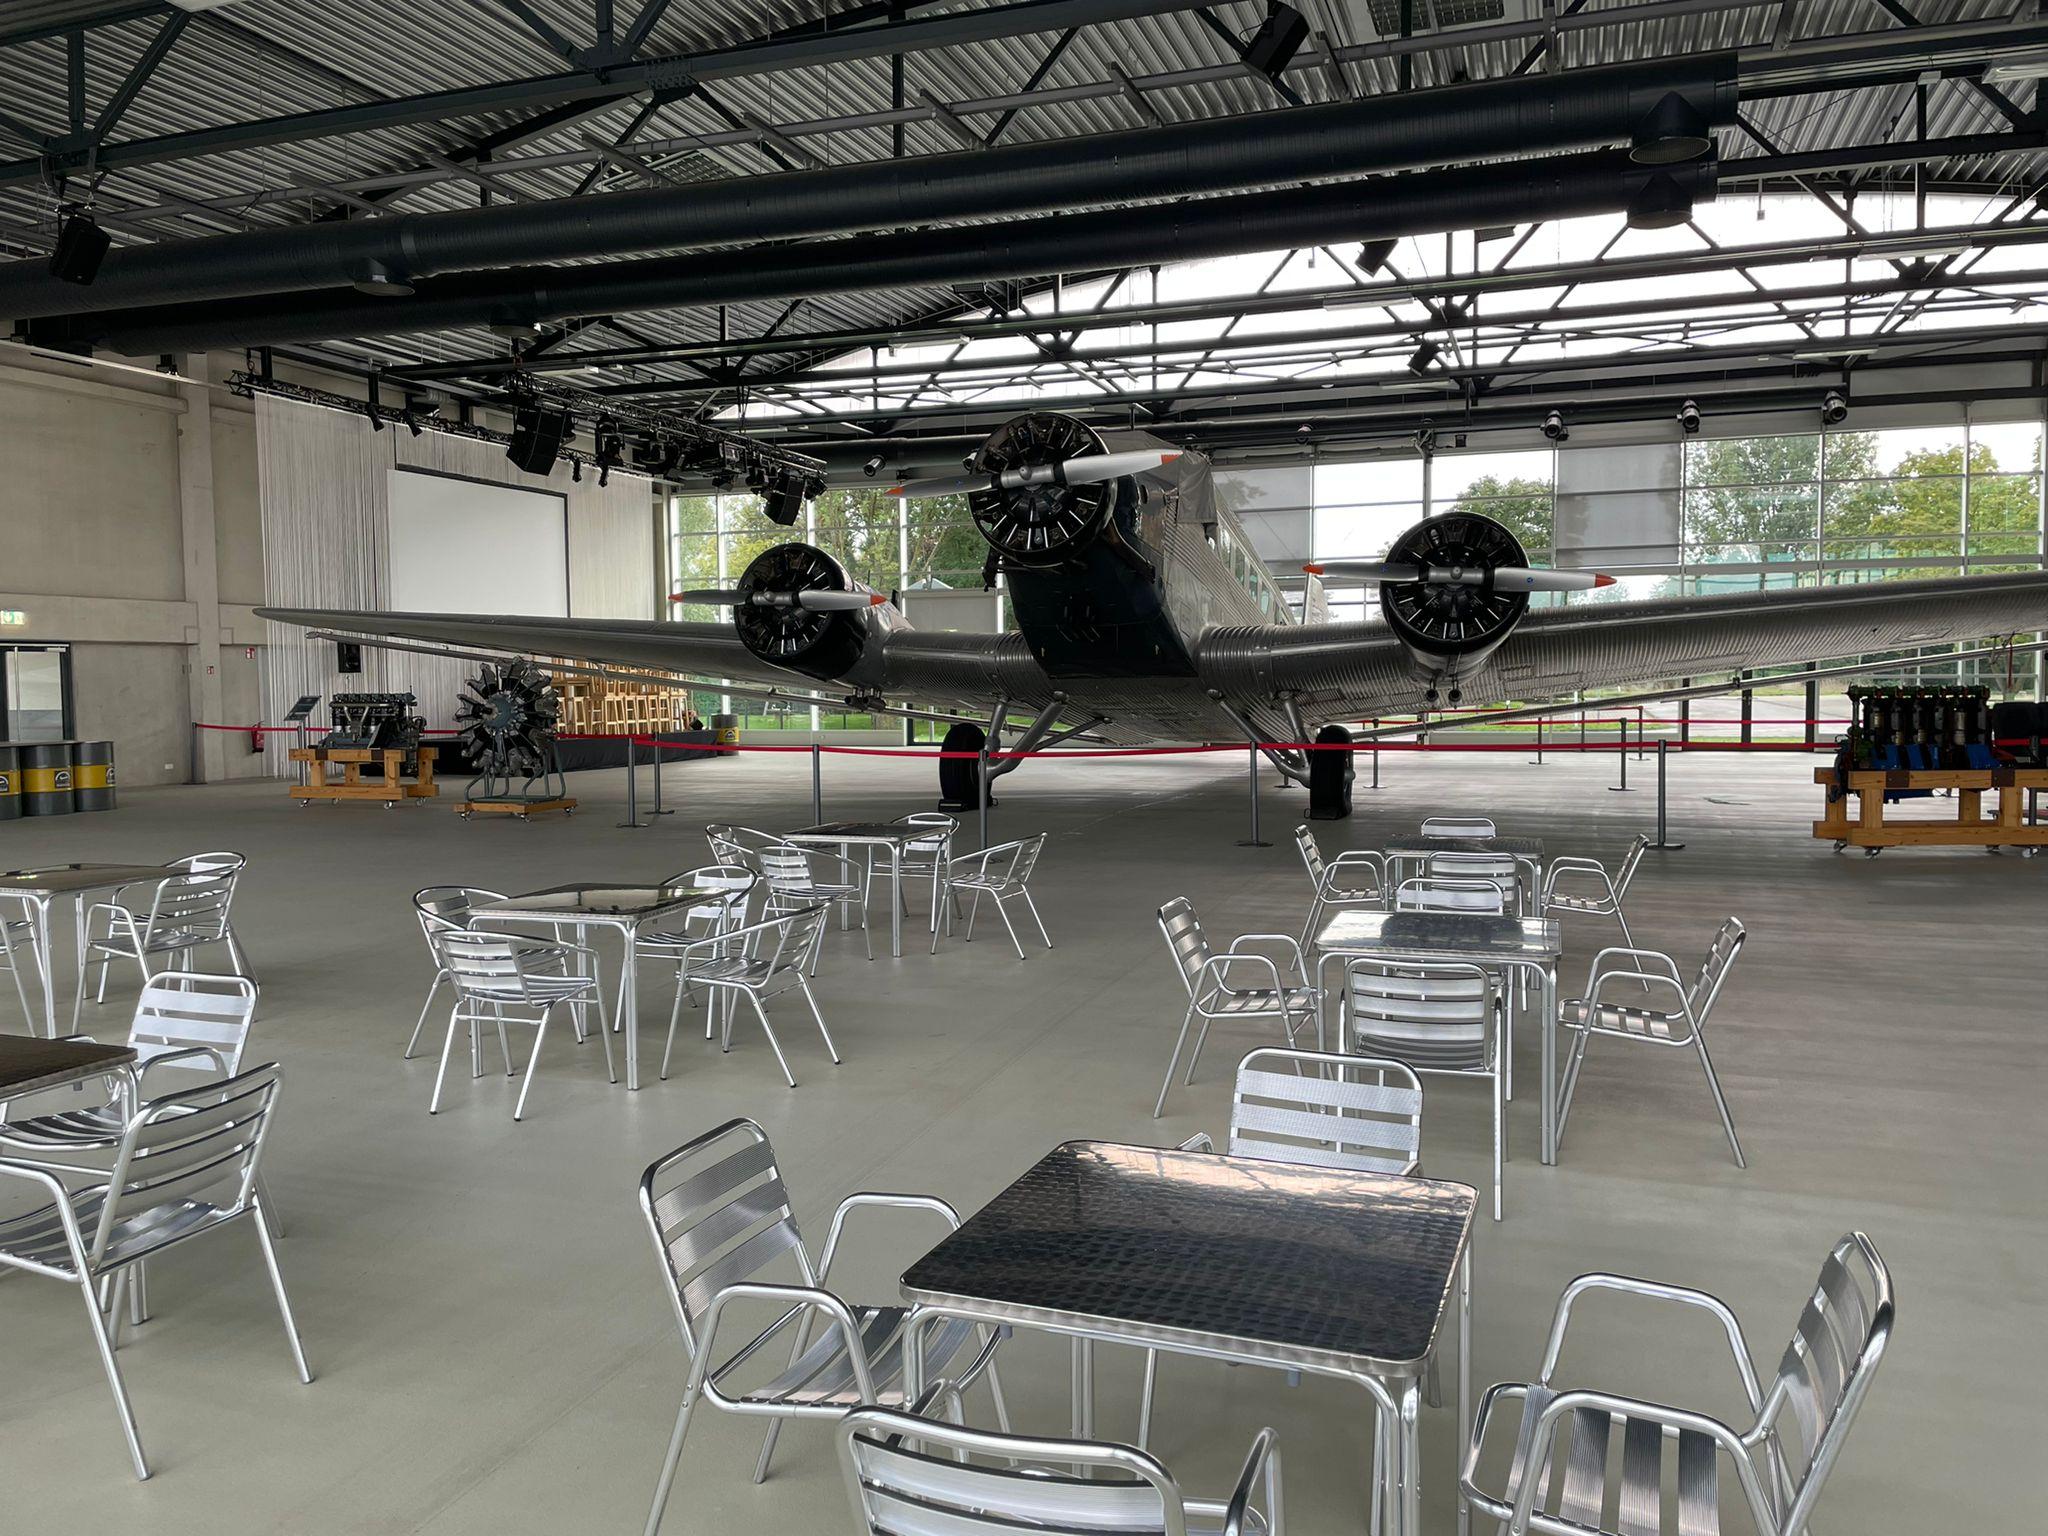 Unsere Ju52 (Kennzeichen HB-HOY) und der Hangar warten auf Euch